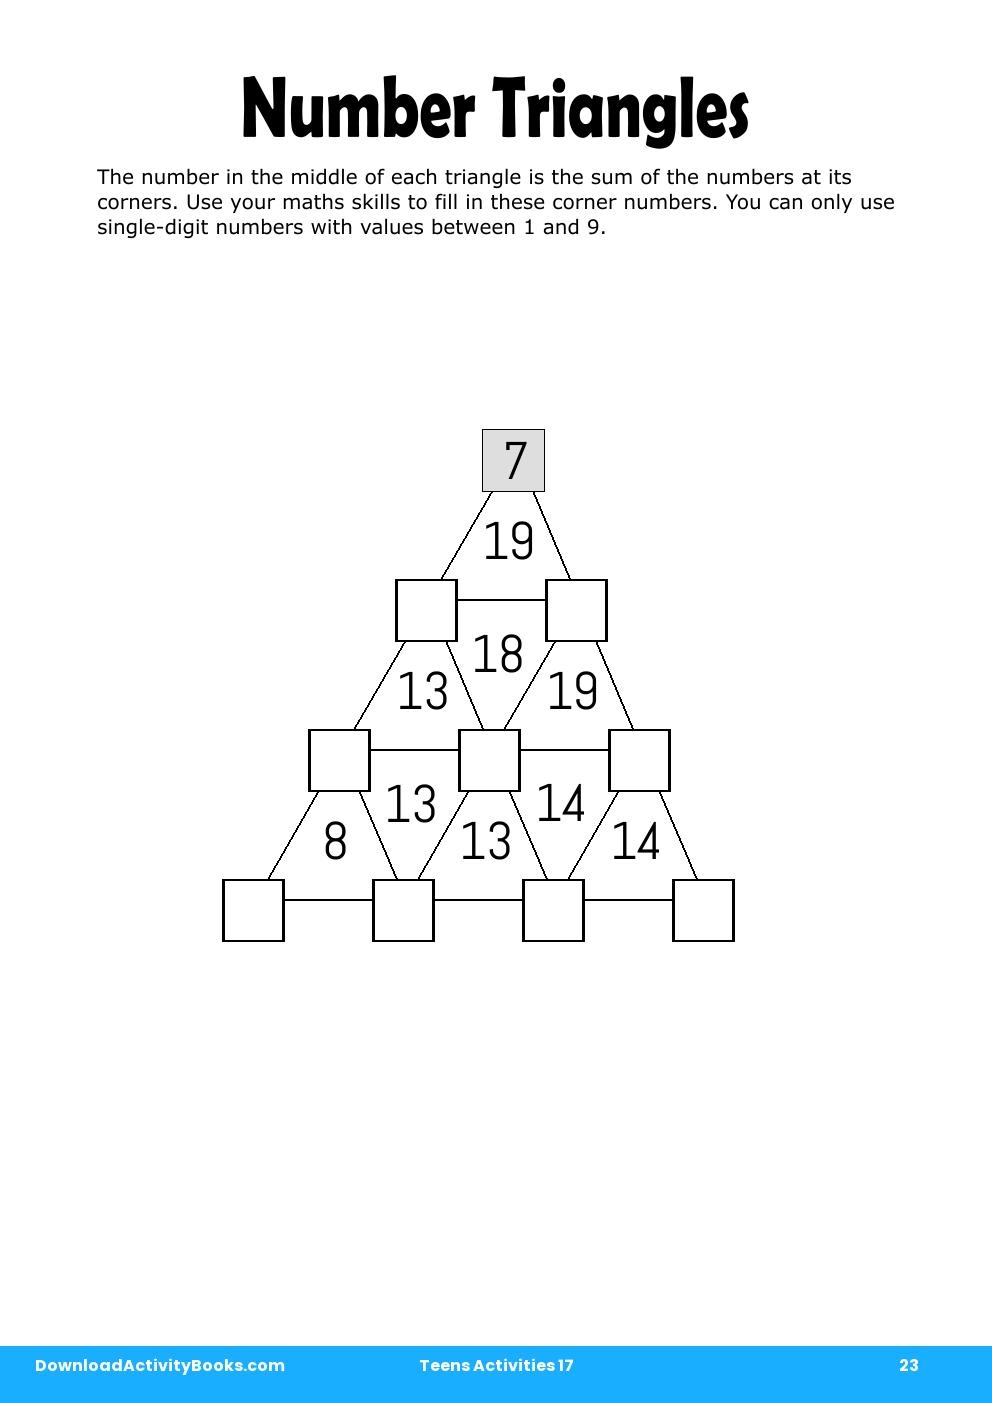 Number Triangles in Teens Activities 17